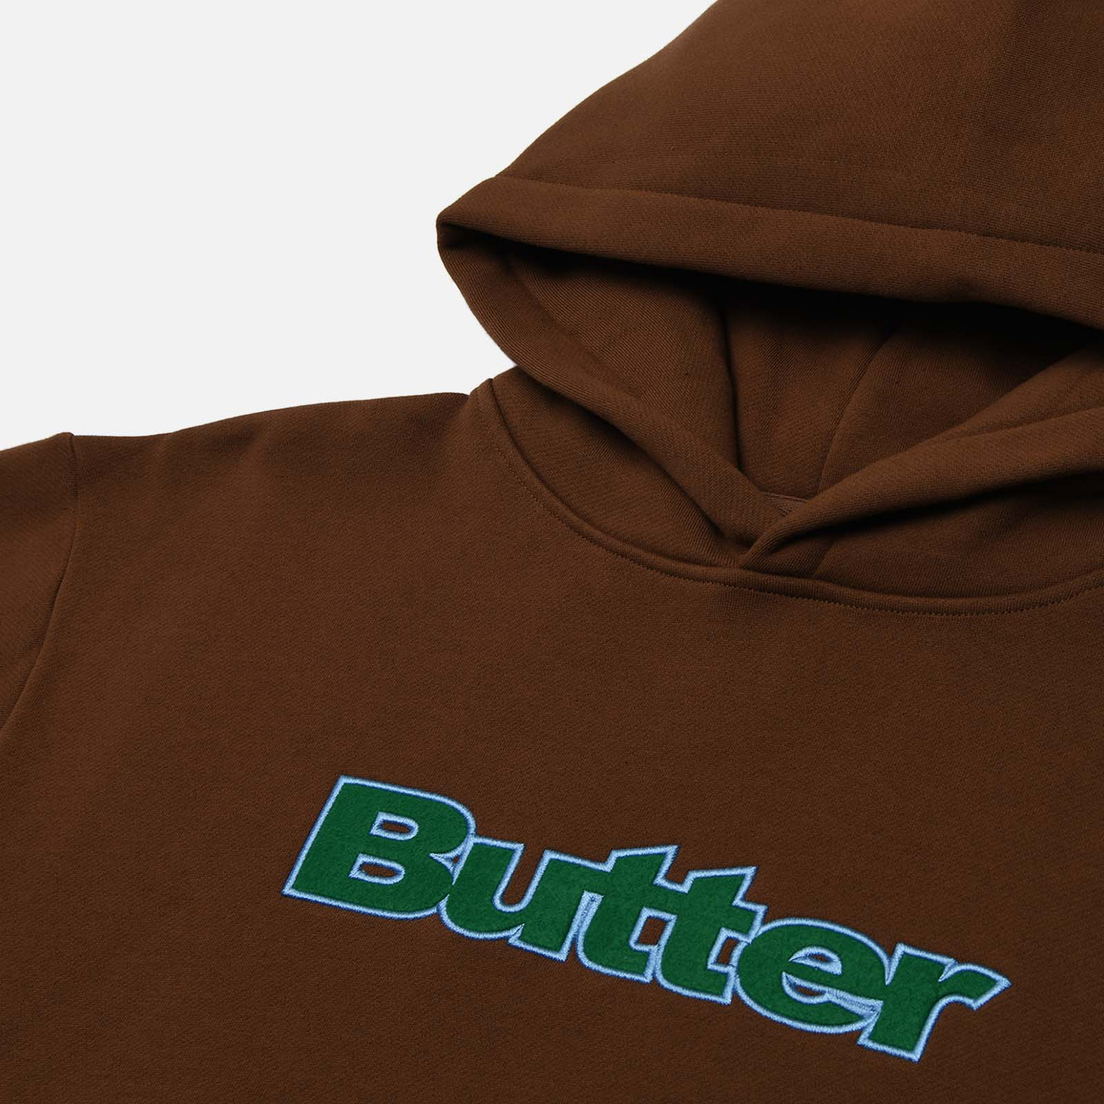 Butter Goods Мужская толстовка Felt Logo Applique Hoodie